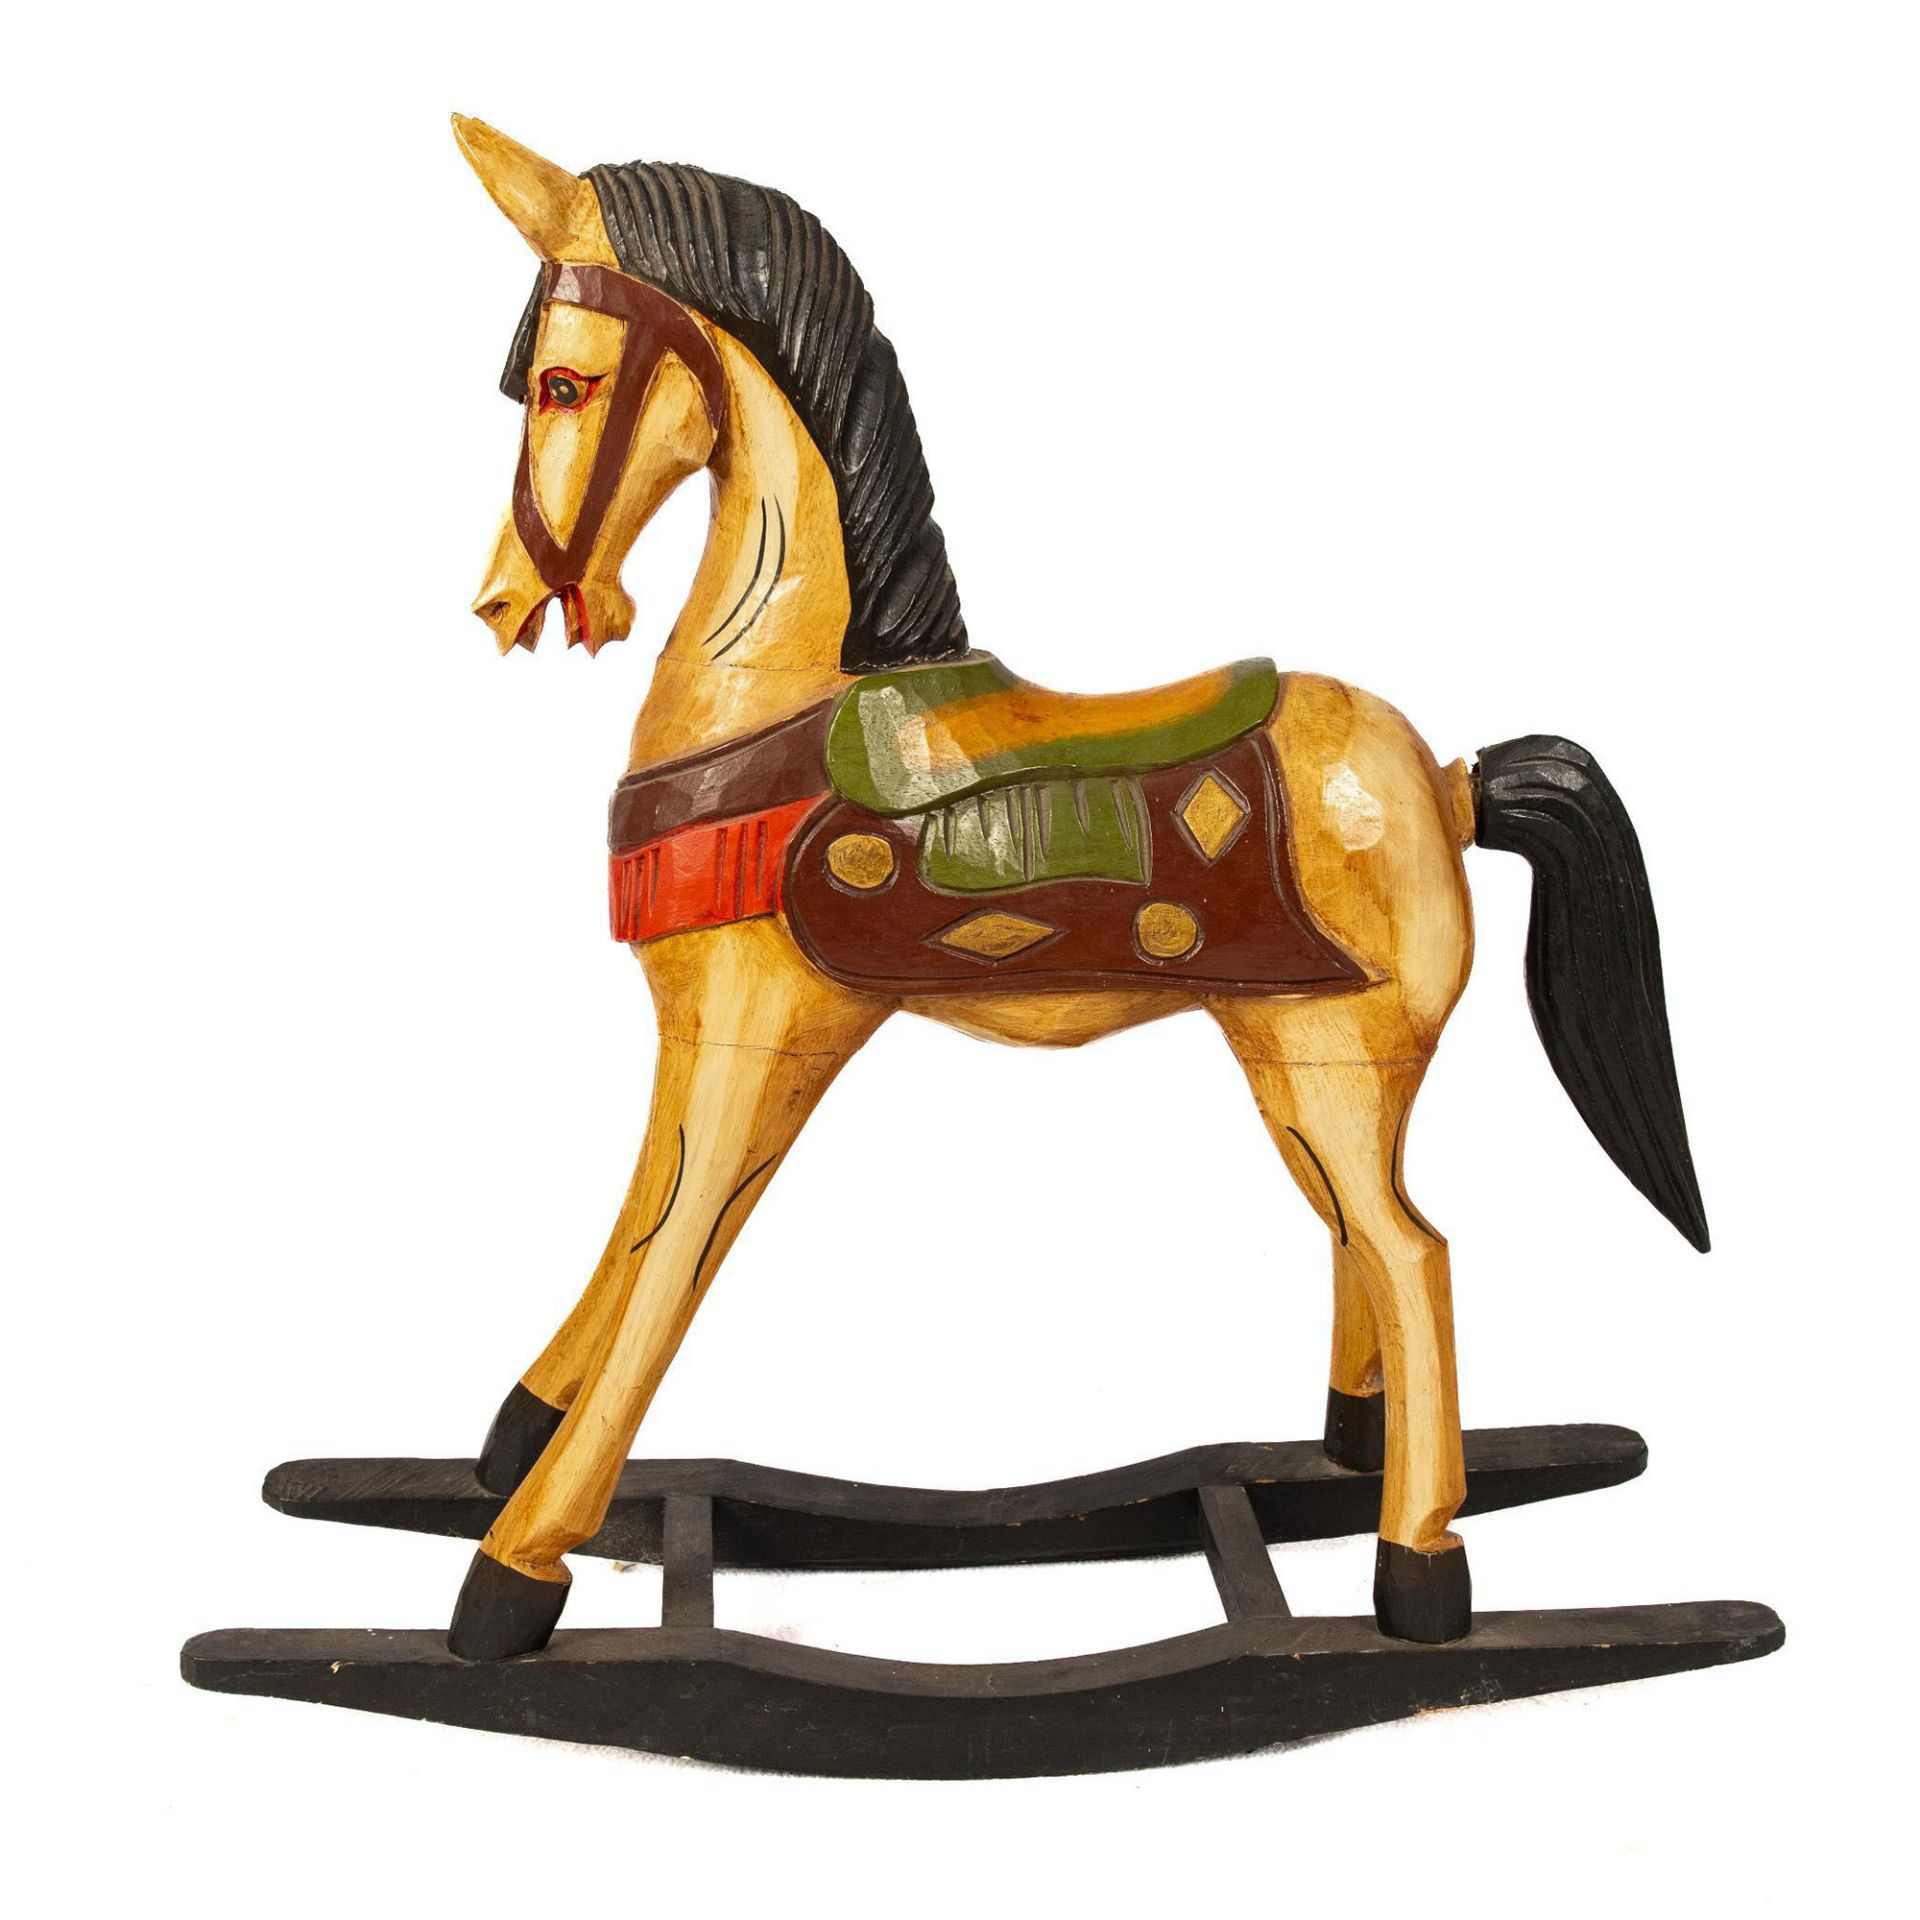 Decorative Painted Wood Rocking Horse - Image 2 of 5